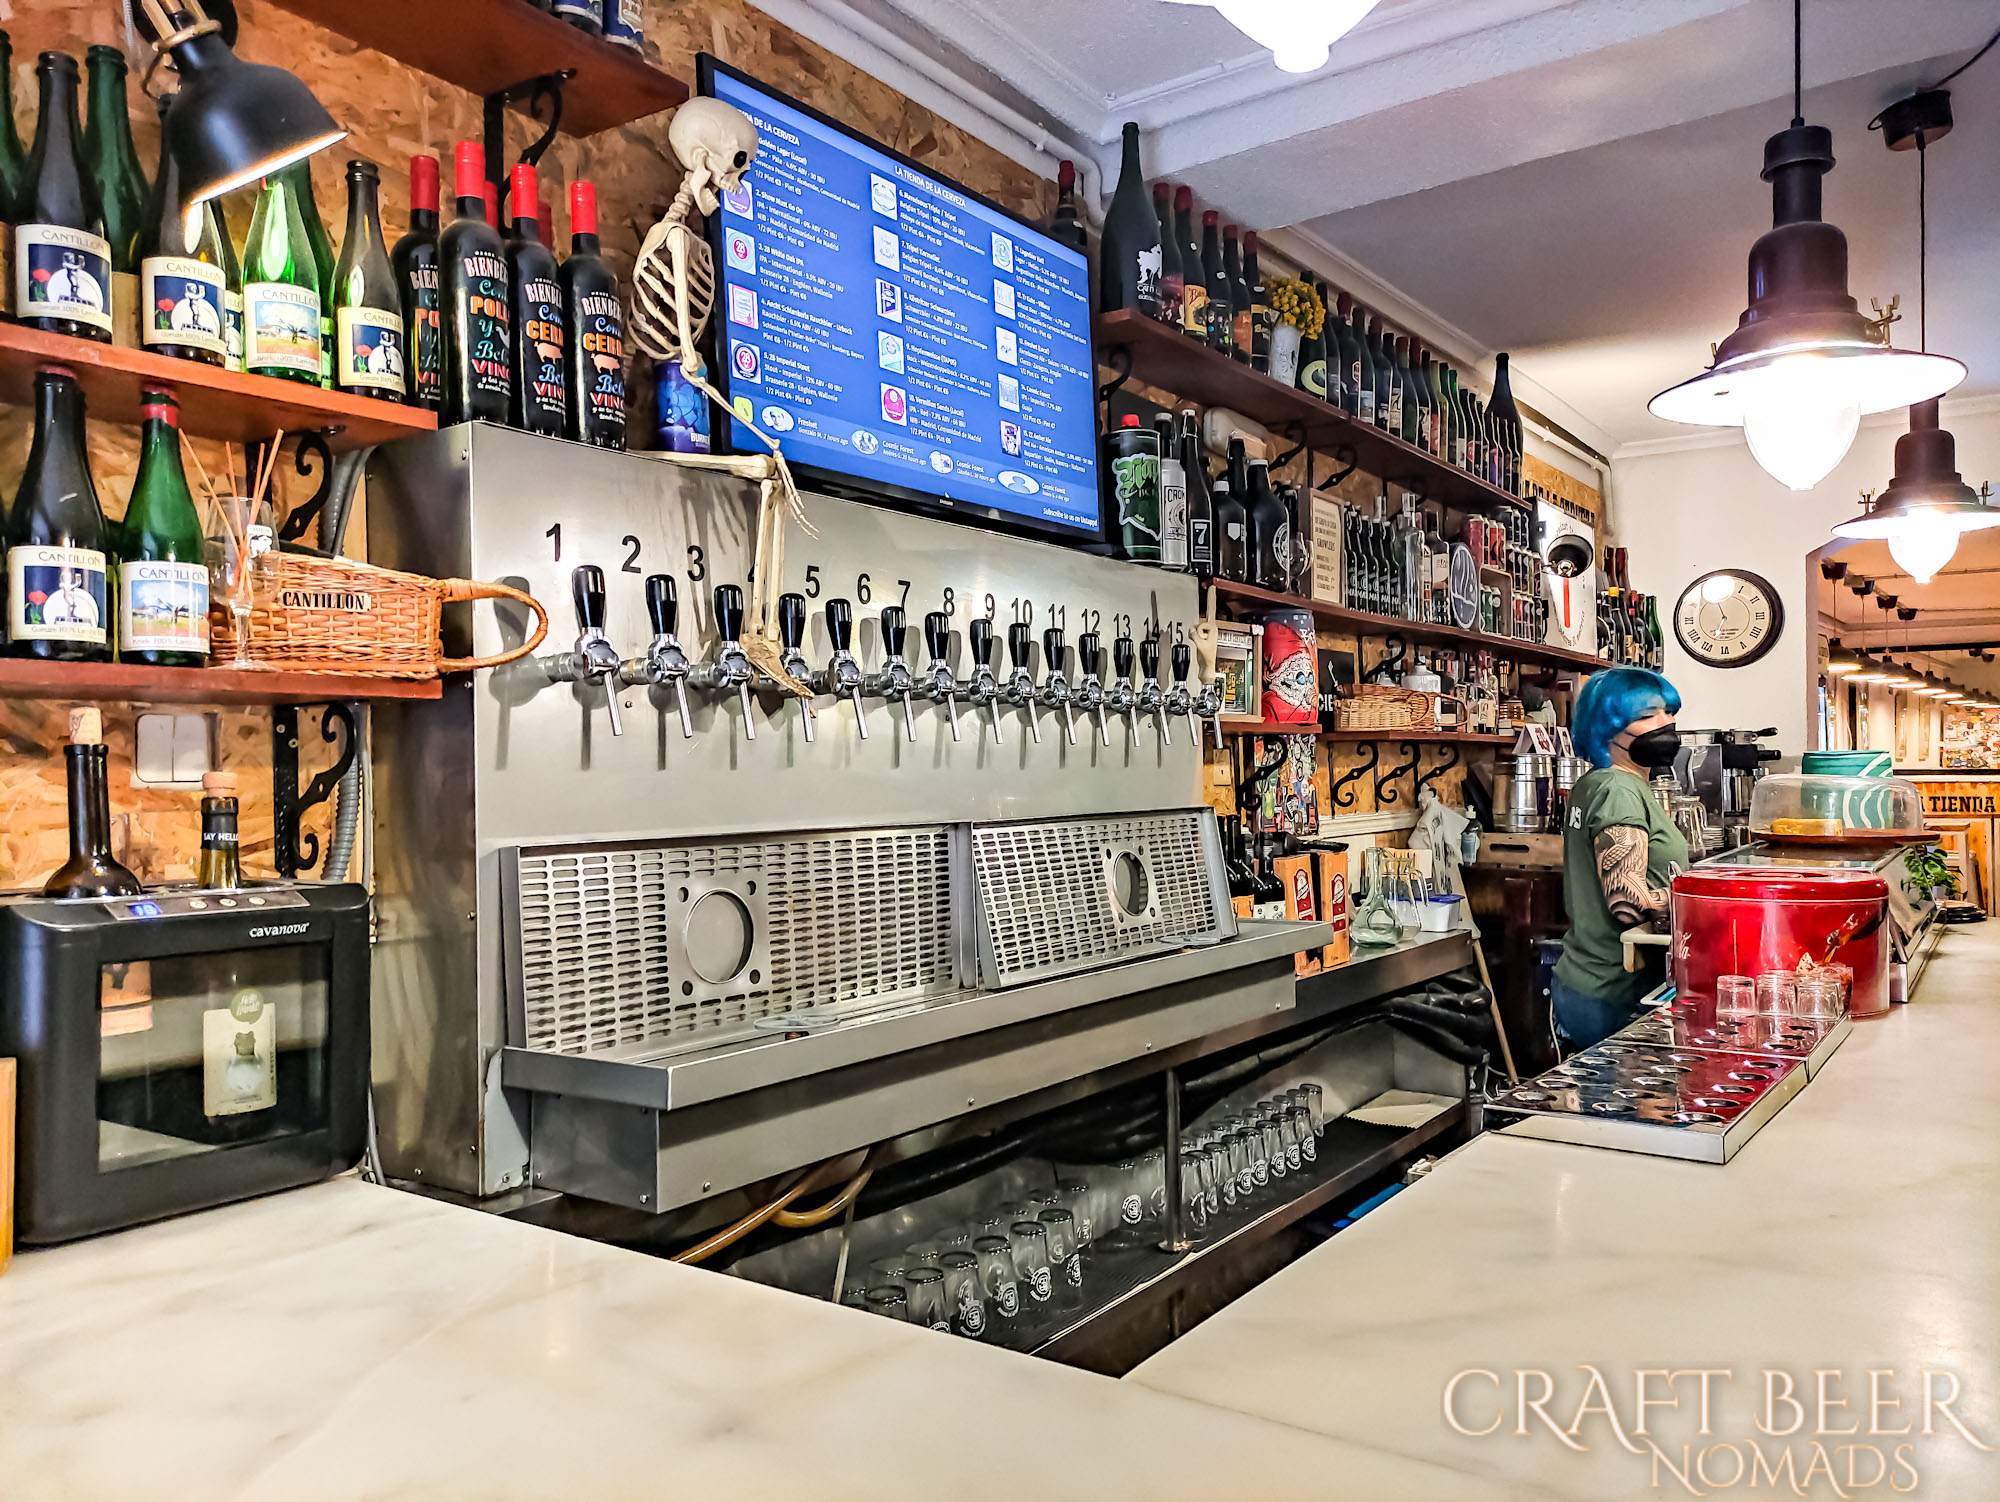 NIB Brewing La Tienda de la Cerveza | Craft beer in Madrid, Spain | Craft Beer Nomads